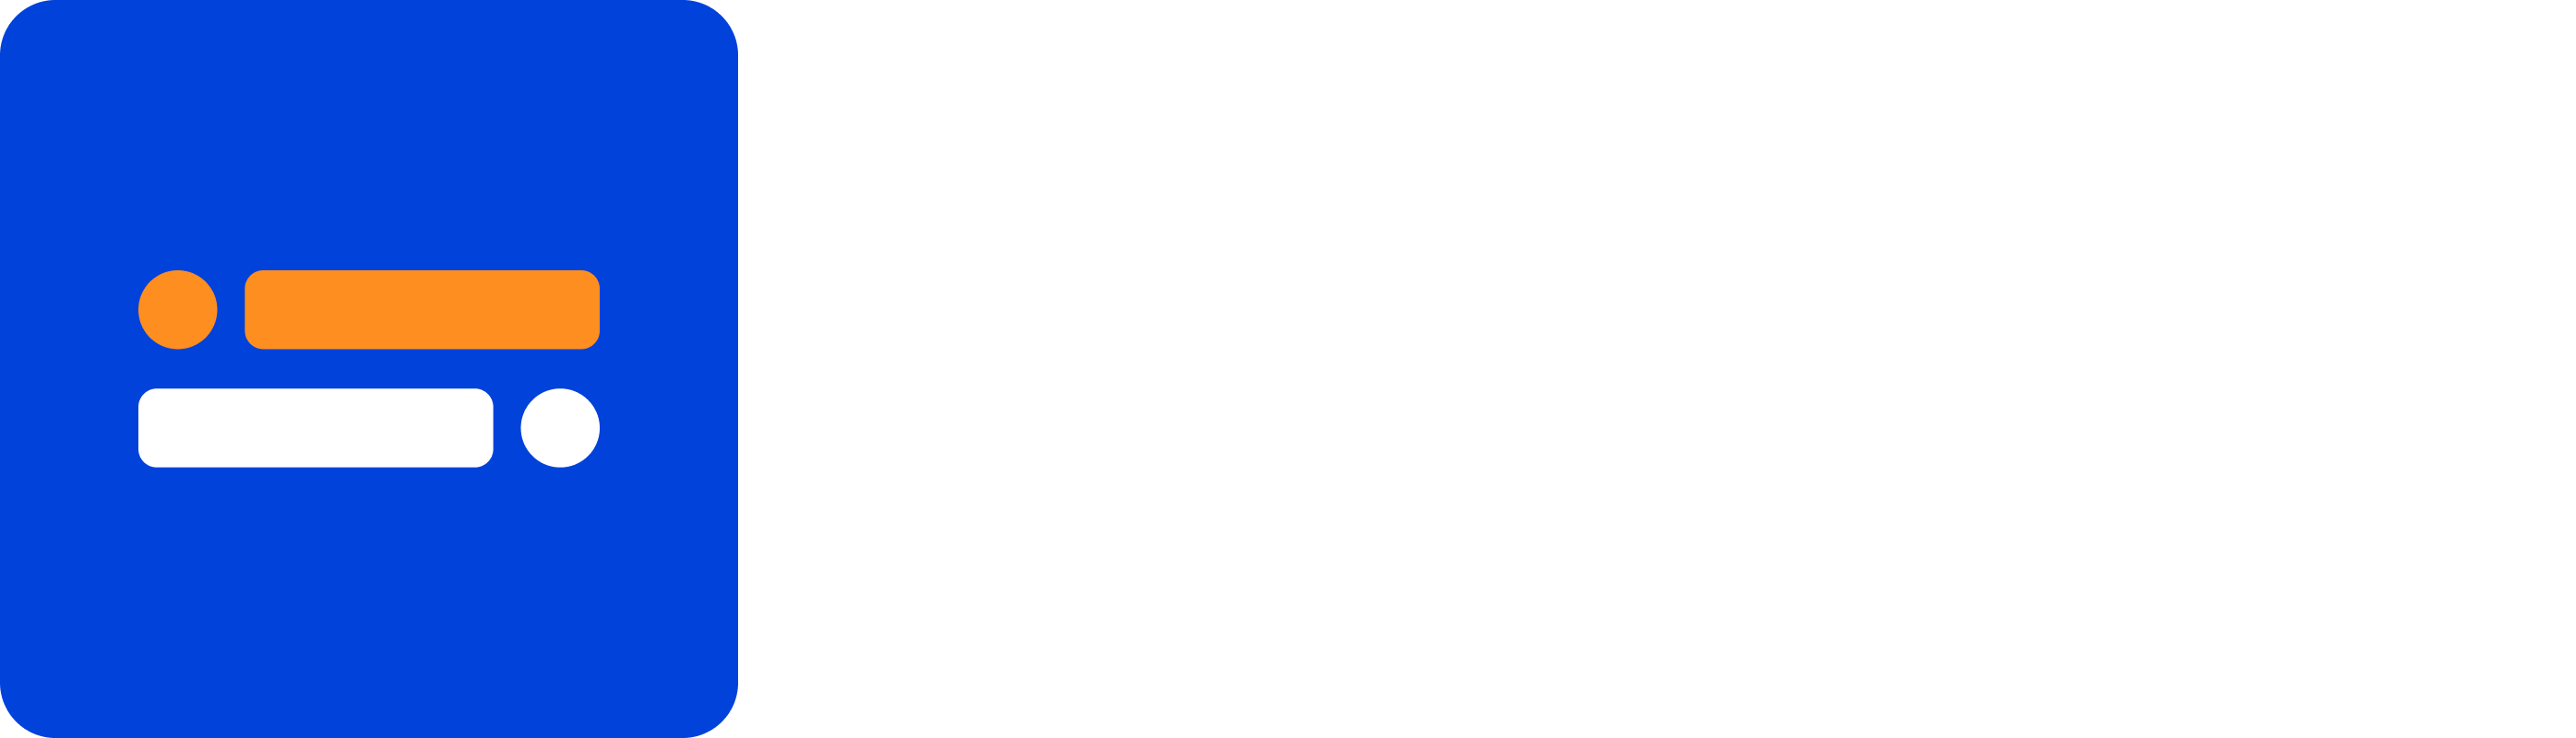 Typebot illustration